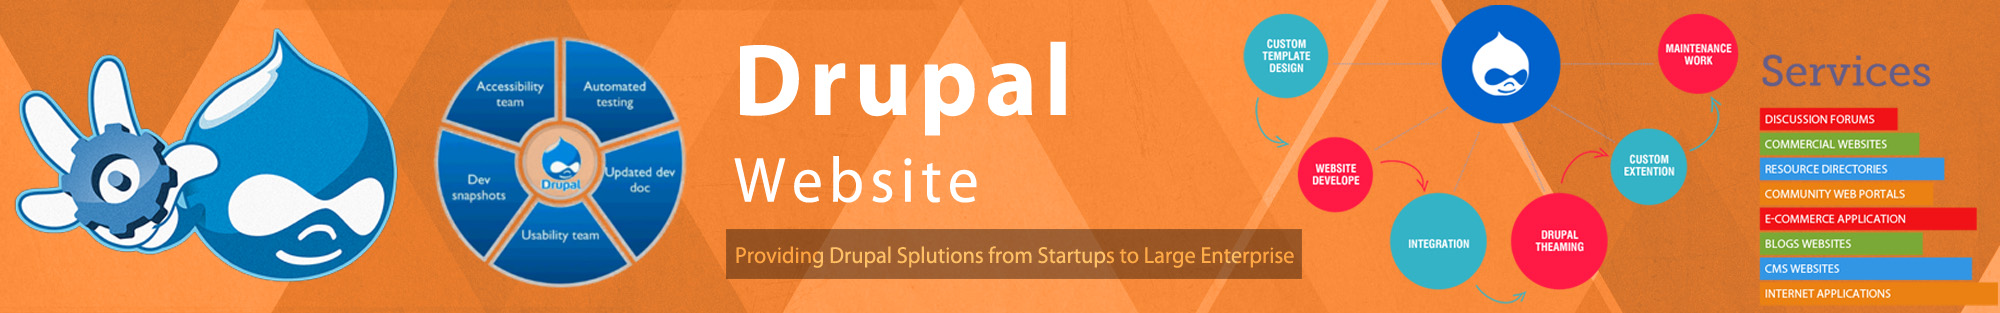 Drupal web development company in Mumbai, India -Technowebsy